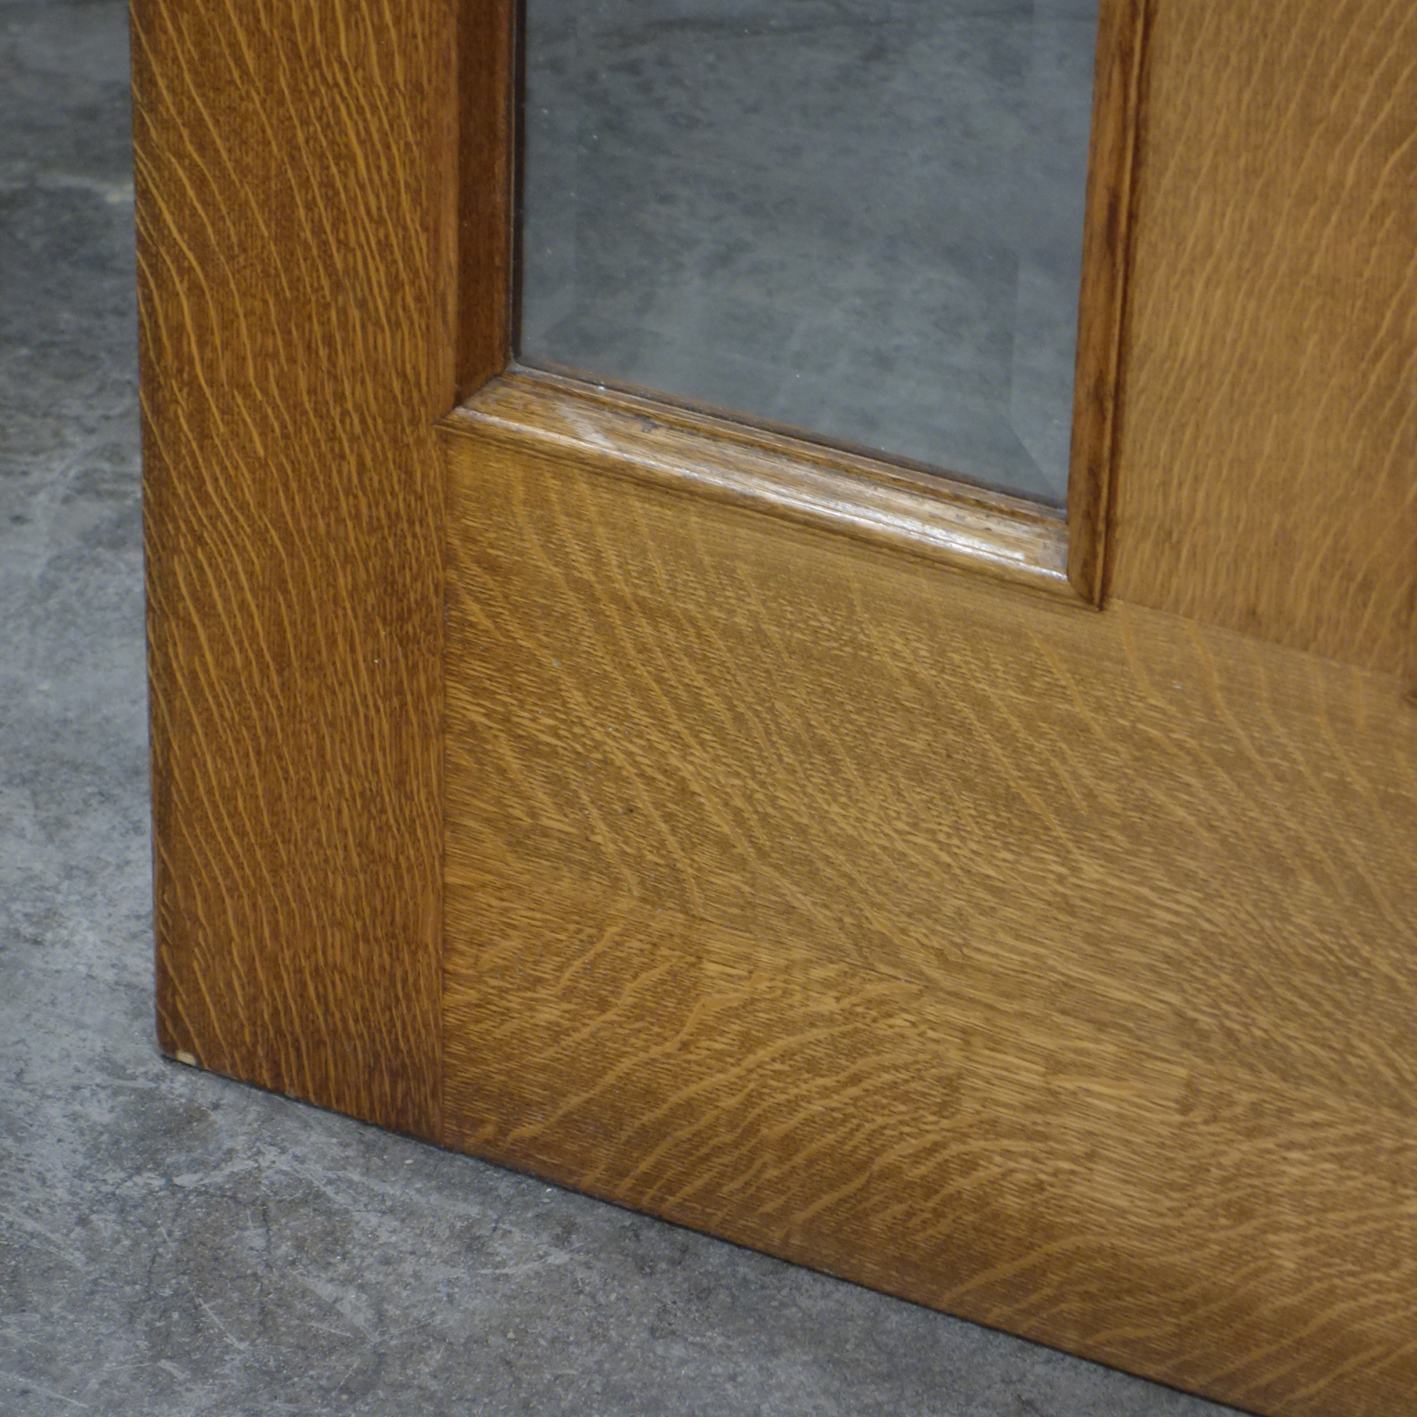 Double door in oak wood (H. 201.5 x (2 x 80.5 cm)) – Right